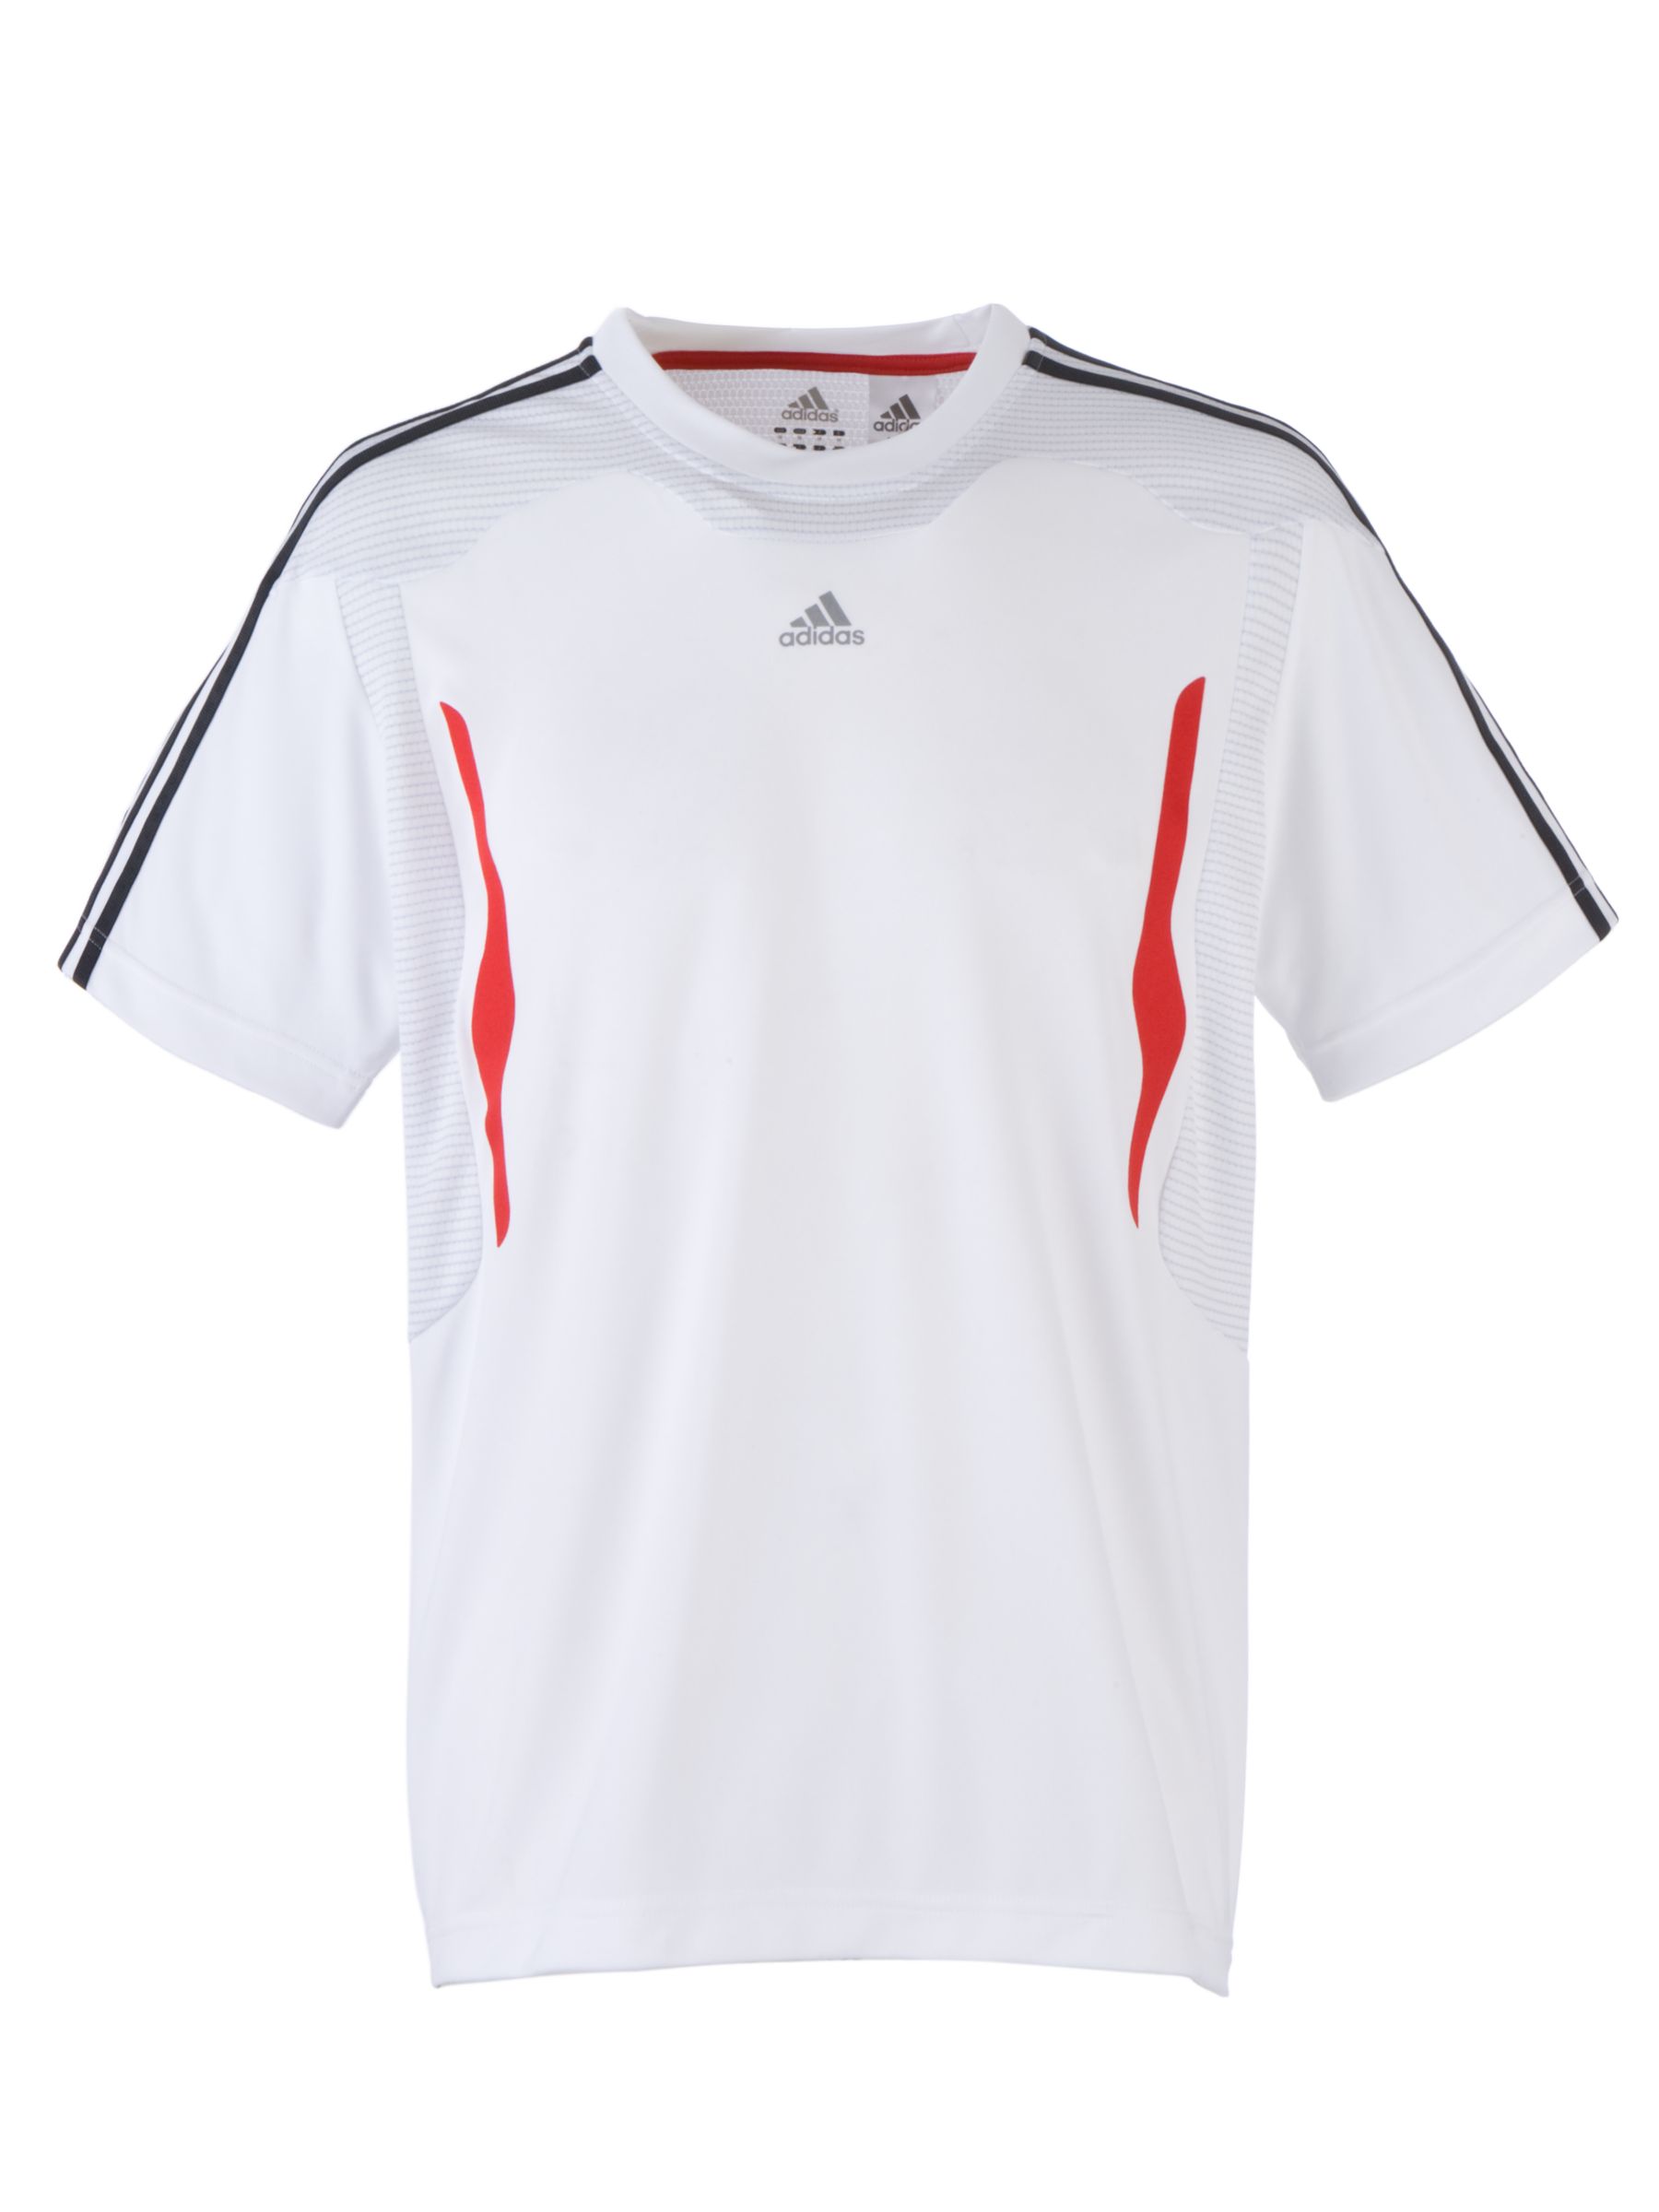 Adidas Clima 365 Short Sleeve T-Shirt, White